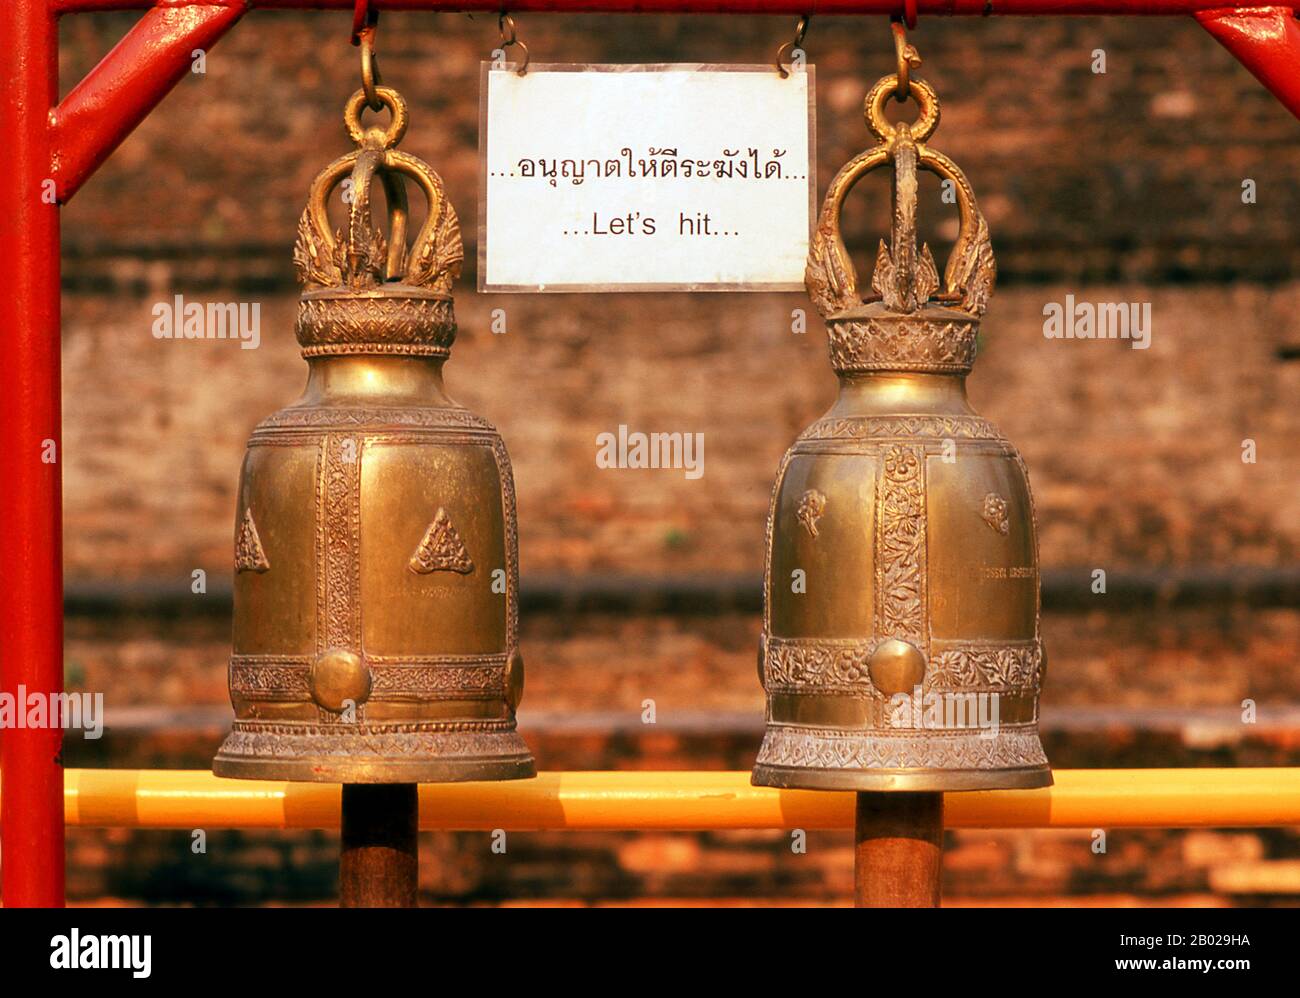 Wat Chedi Luang übersetzt wörtlich aus dem thailändischen als 'Monasterium des Großen Stupa'. Der Bau des Tempels begann Ende des 14. Jahrhunderts, als das Königreich Lan Na seinen Anfang nahm. König Saen Muang Ma (1385-1401) beabsichtigte es als Ort eines großen Reliquiars, um die Asche seines Vaters, König Ku Na (1355-85), zu verschönern. Heute ist es das Gelände der Lak Muang- oder Stadtsäule. Die jährliche Inthakin-Zeremonie findet innerhalb der Grenzen des Tempels statt. Chiang Mai (was 'neue Stadt' bedeutet), manchmal auch als 'Chiengmai' oder 'Chiangmai' geschrieben, ist die größte und kulturhistorisch bedeutsamste Stadt im Norden Stockfoto